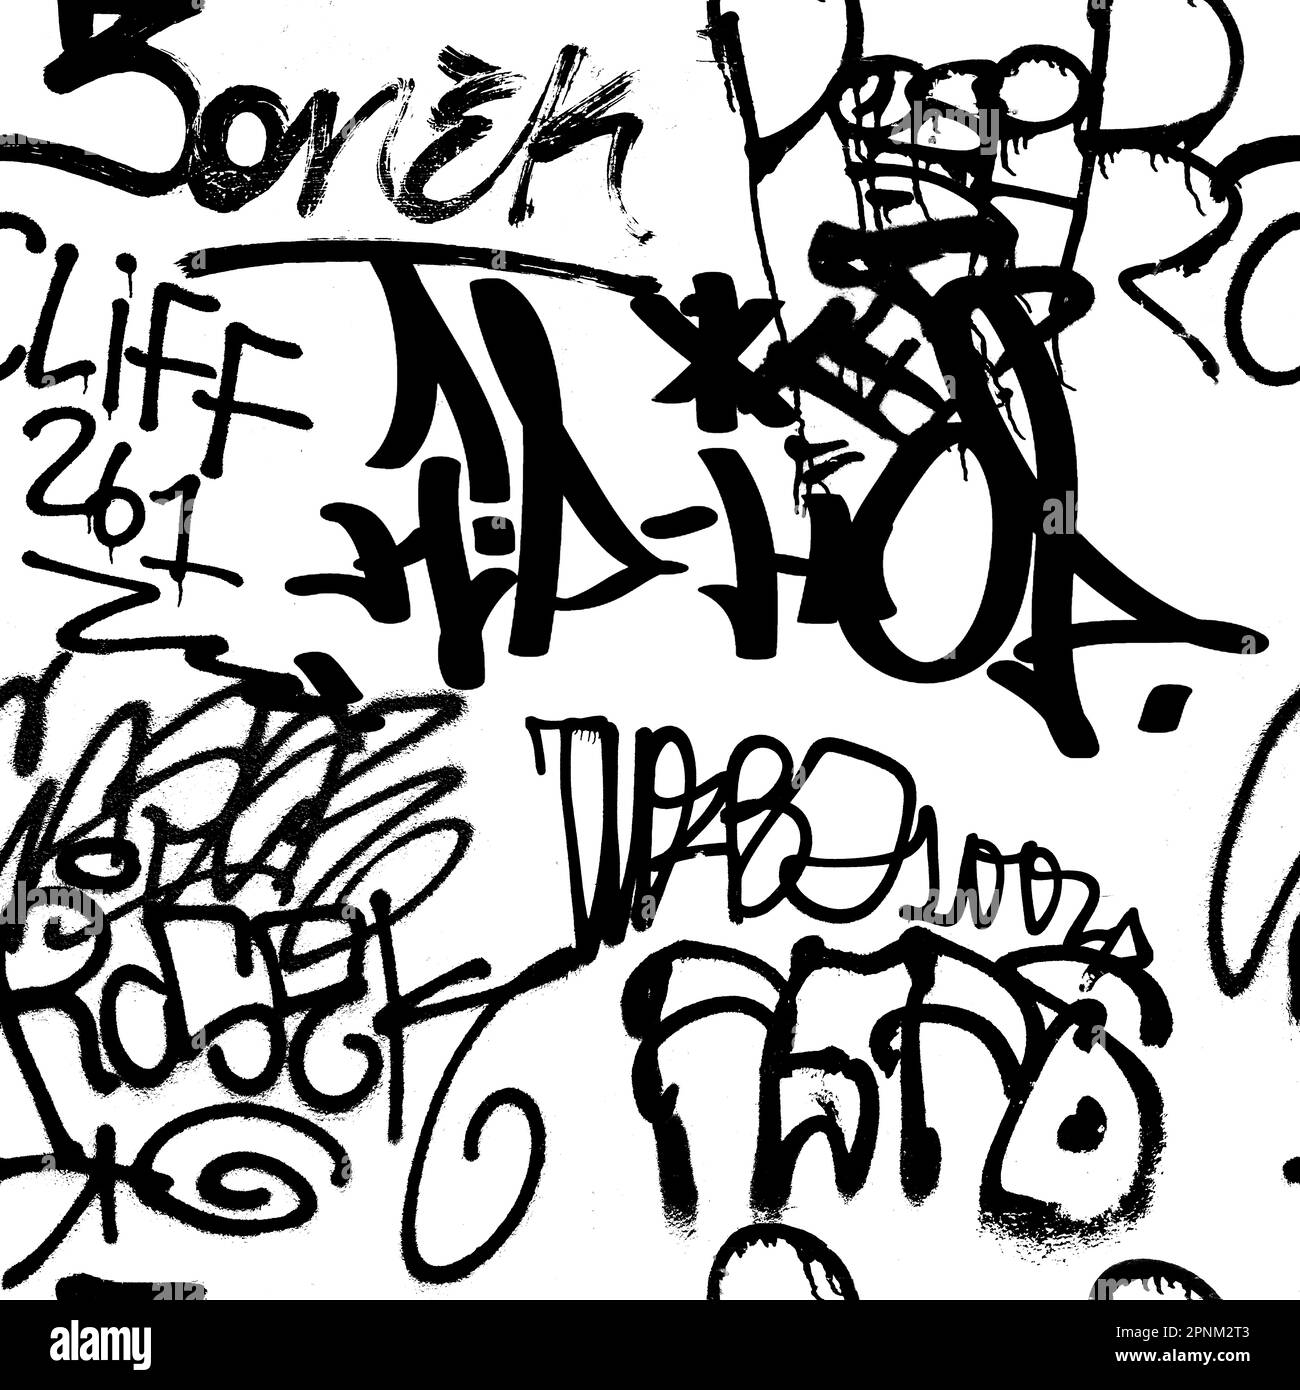 Seamless hand writing graffiti pattern, street art, painting. Stock Photo